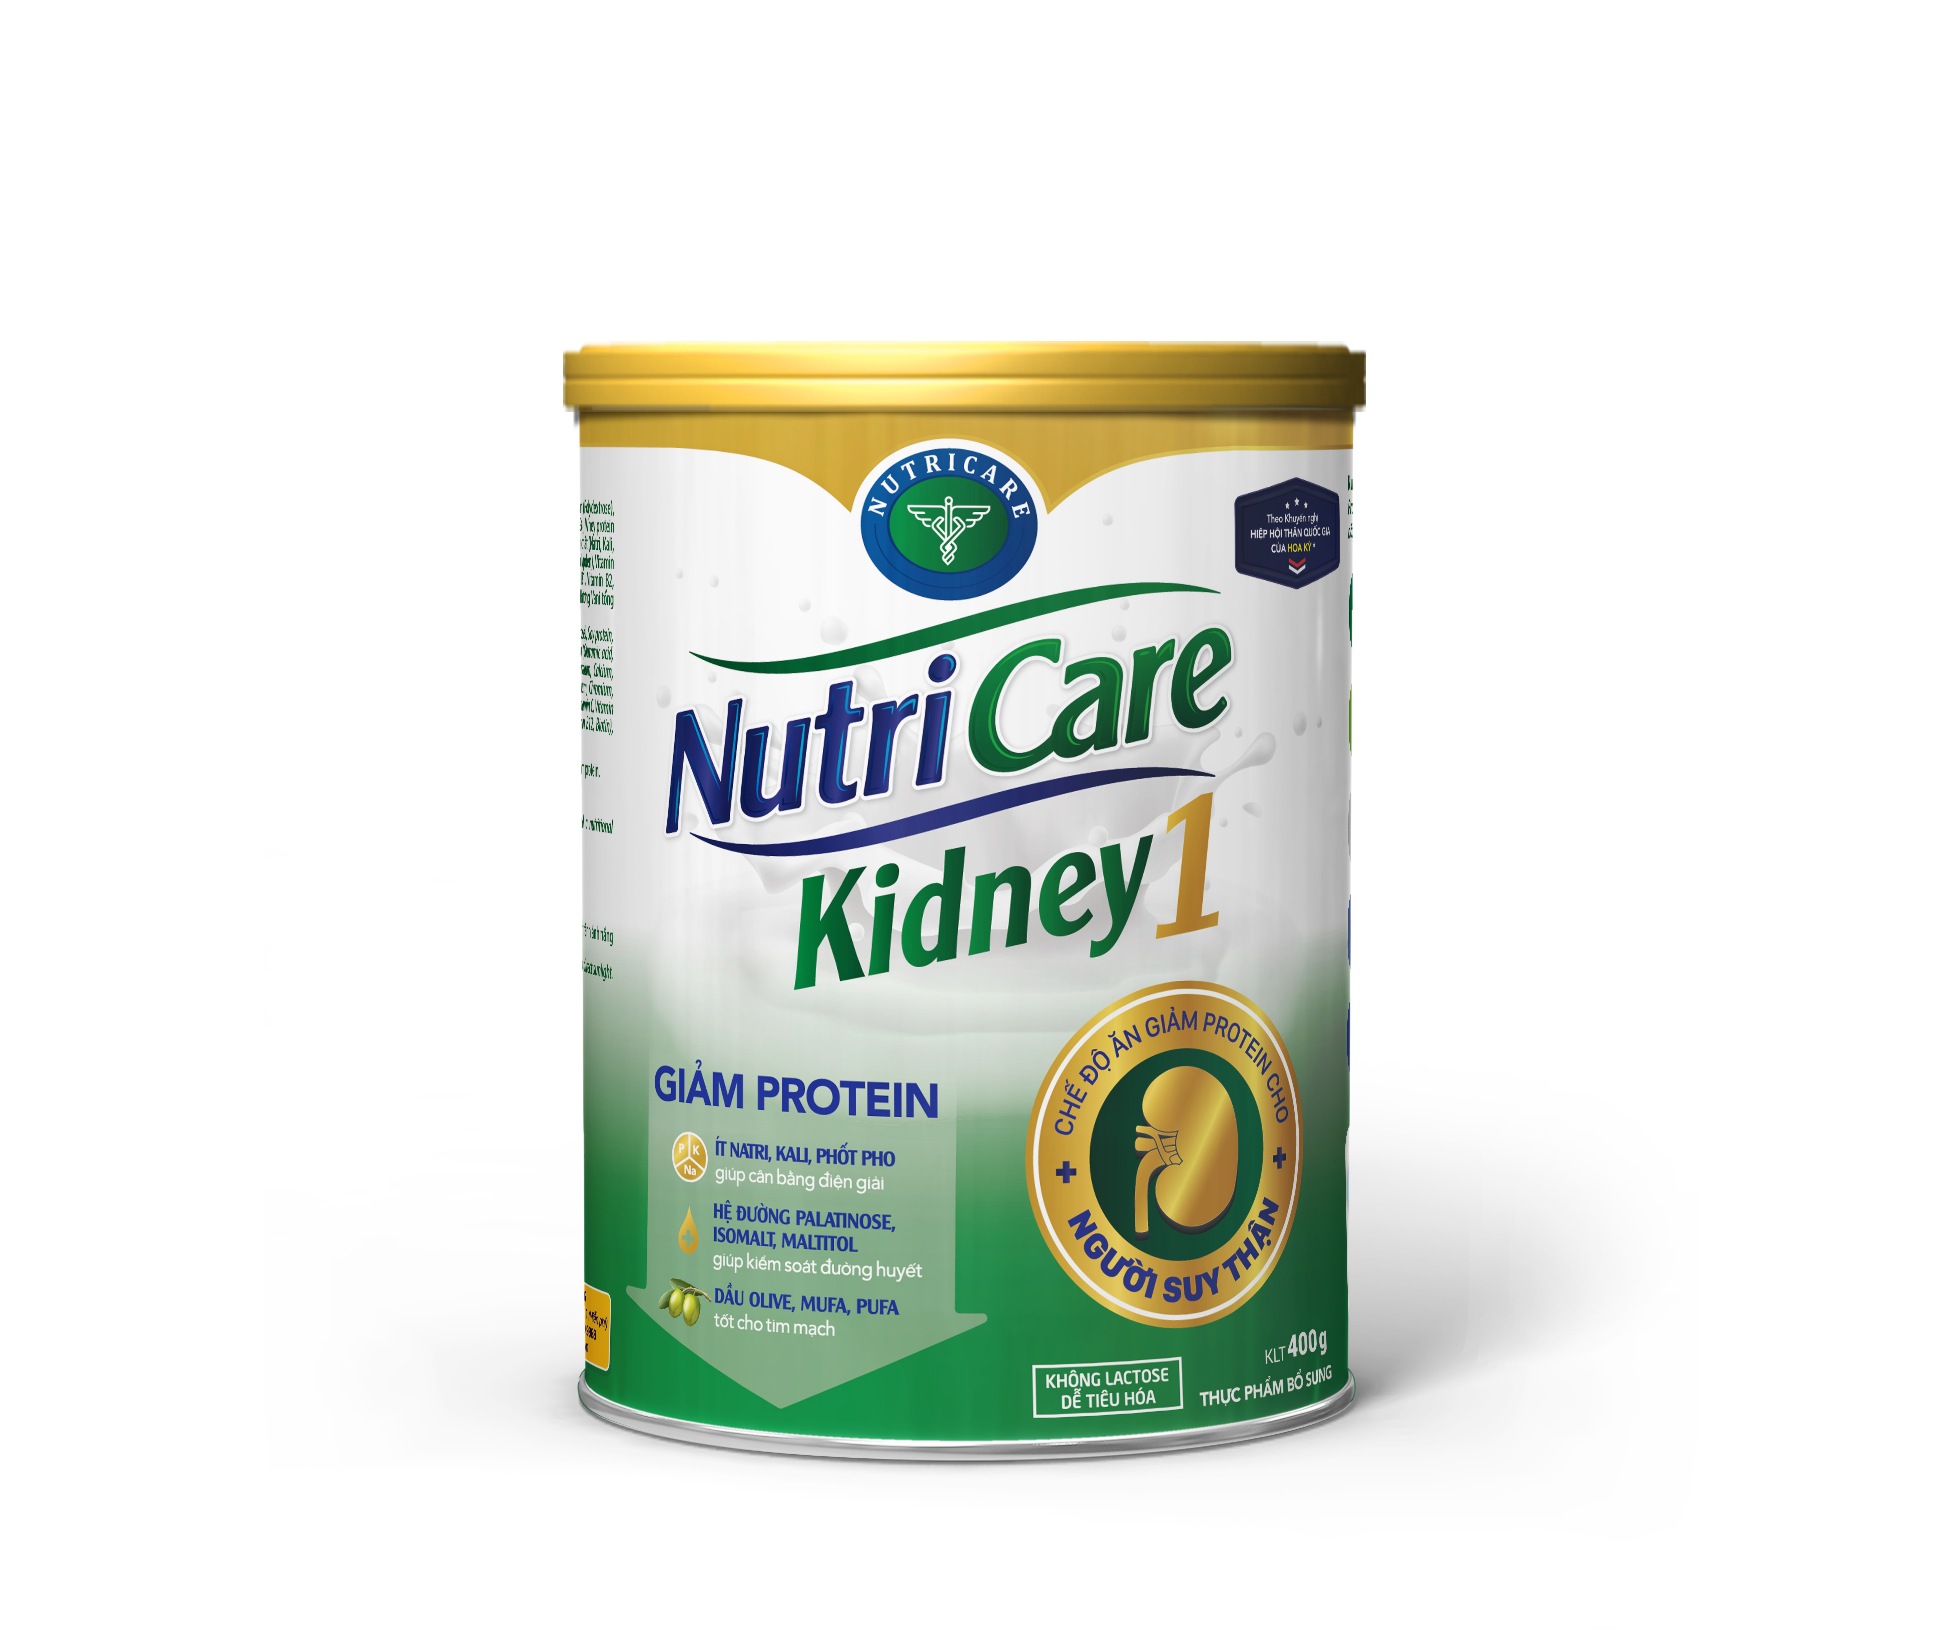 Sữa bột Nutricare Kidney 1 - dinh dưỡng cho người suy thận